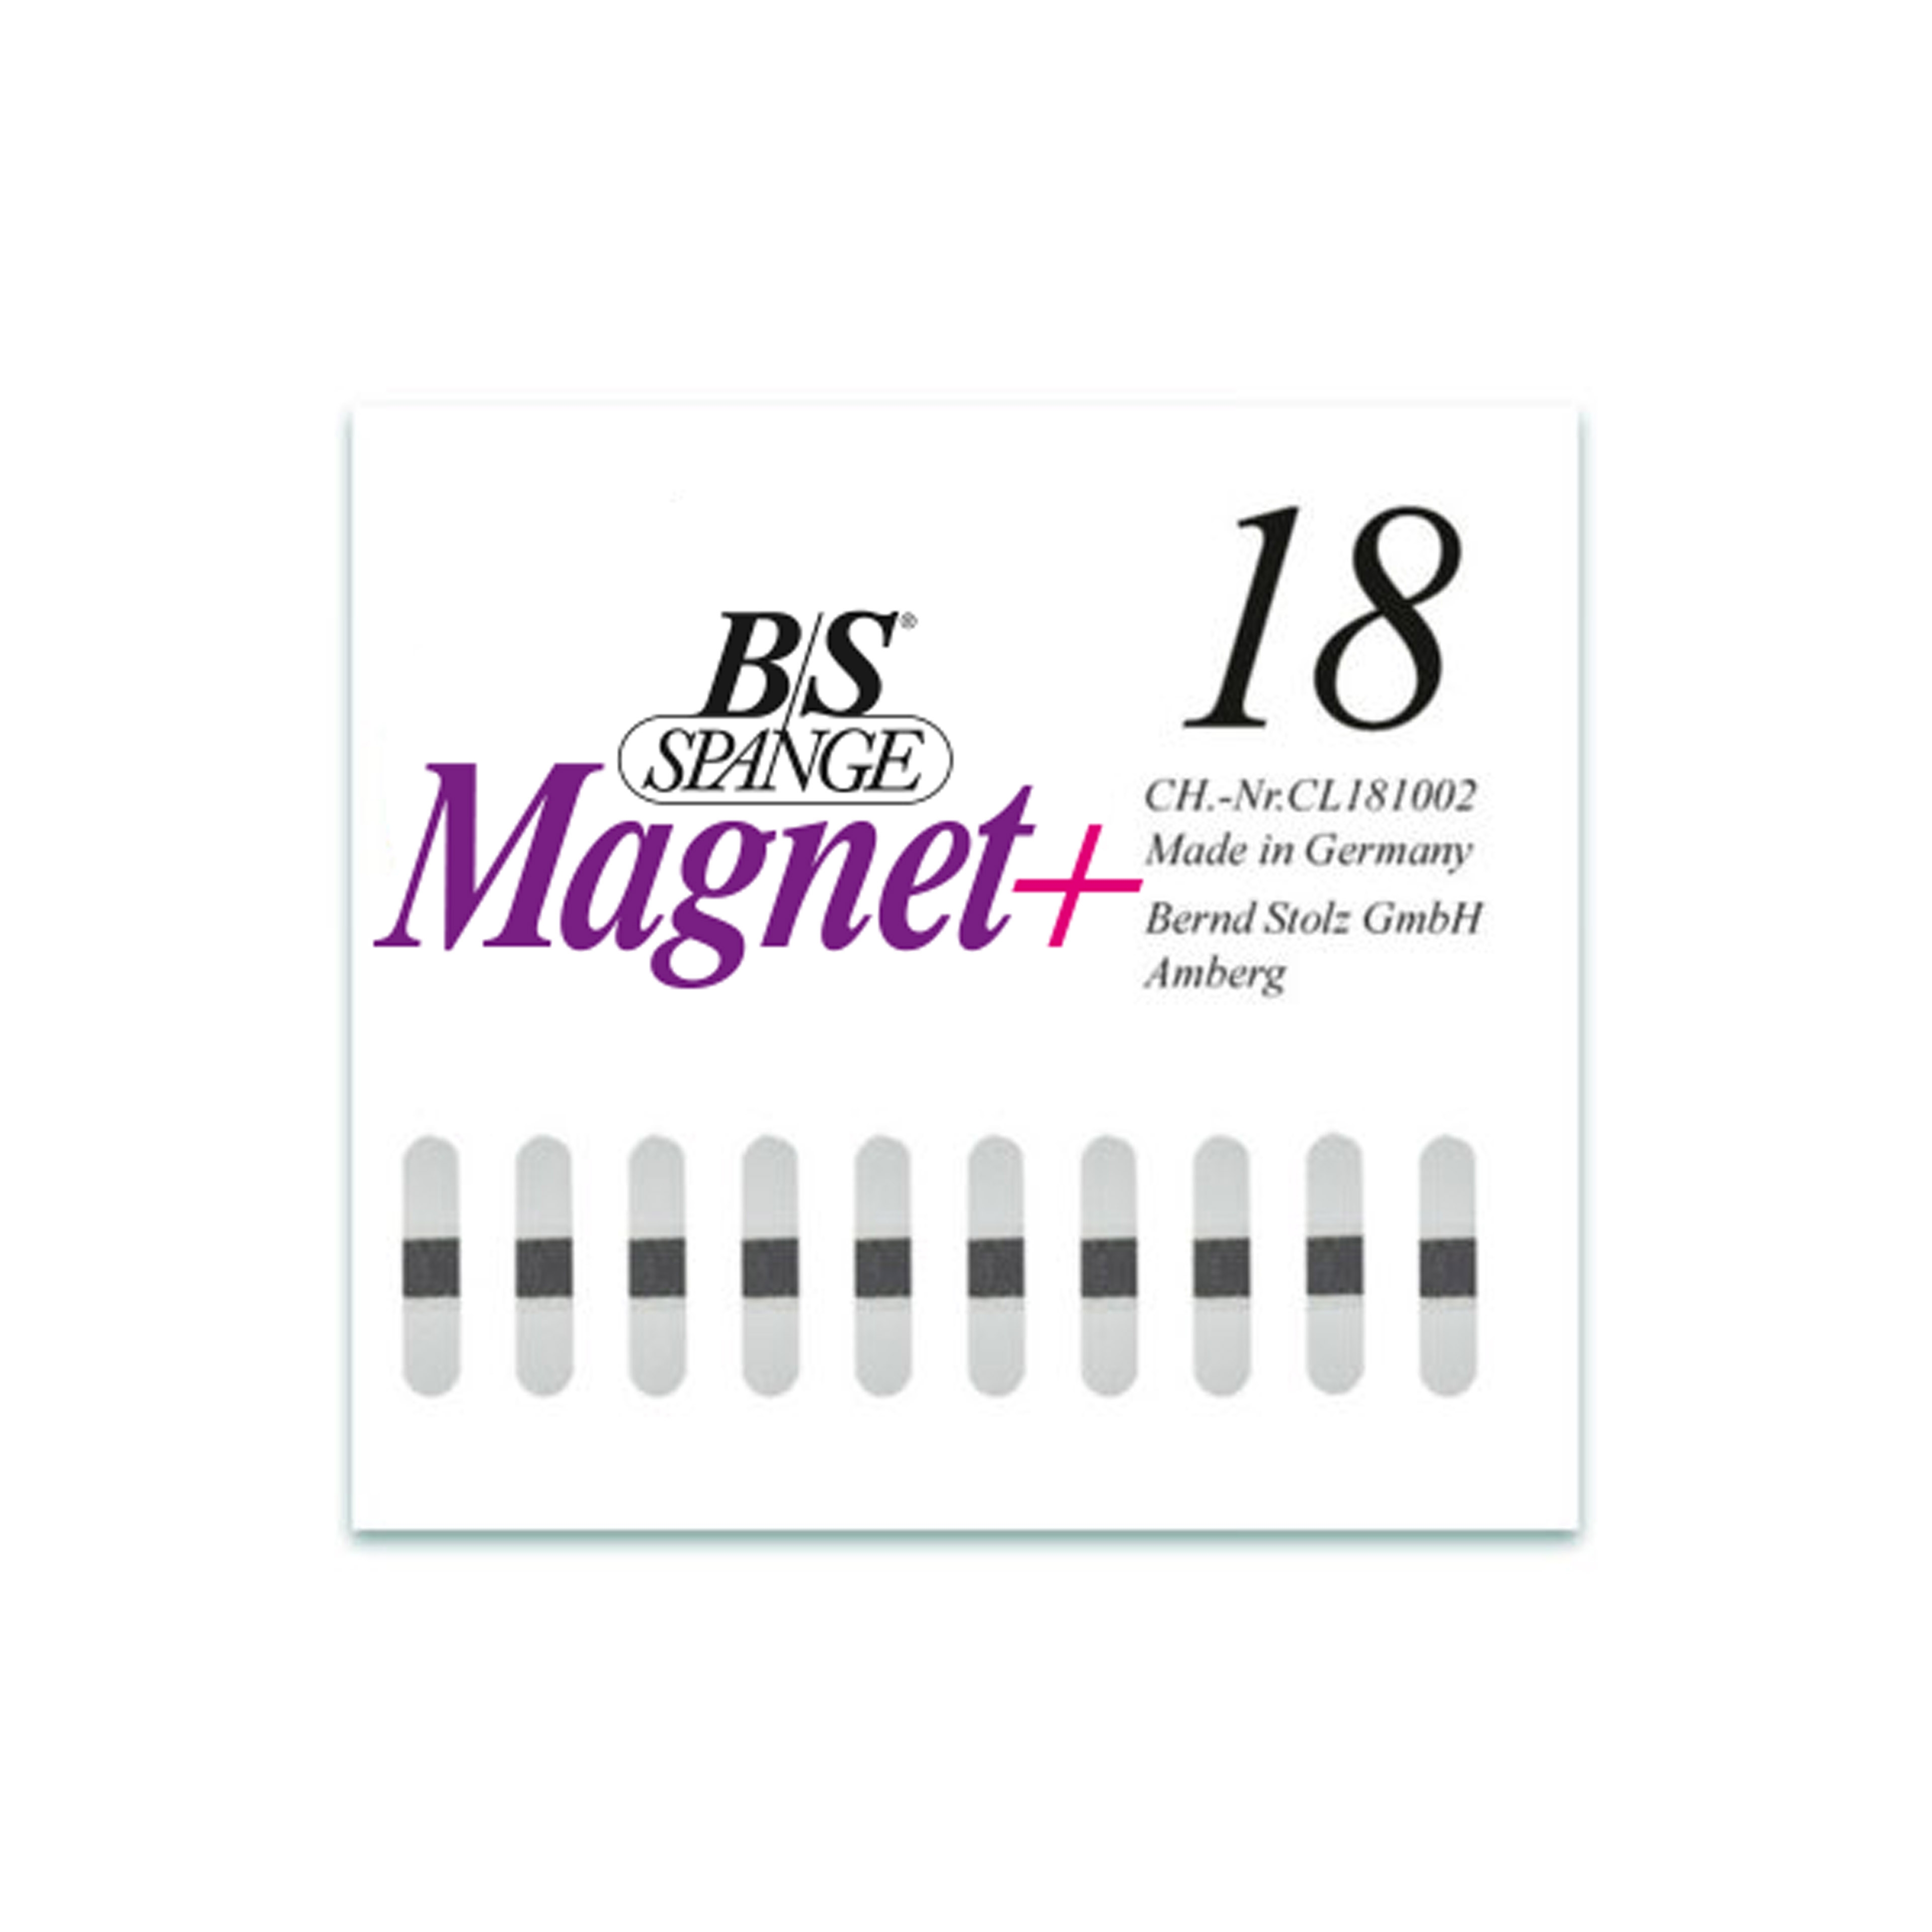 B/S Spange Magnet+ | Länge 18 Breite 4 mm 10 Stück